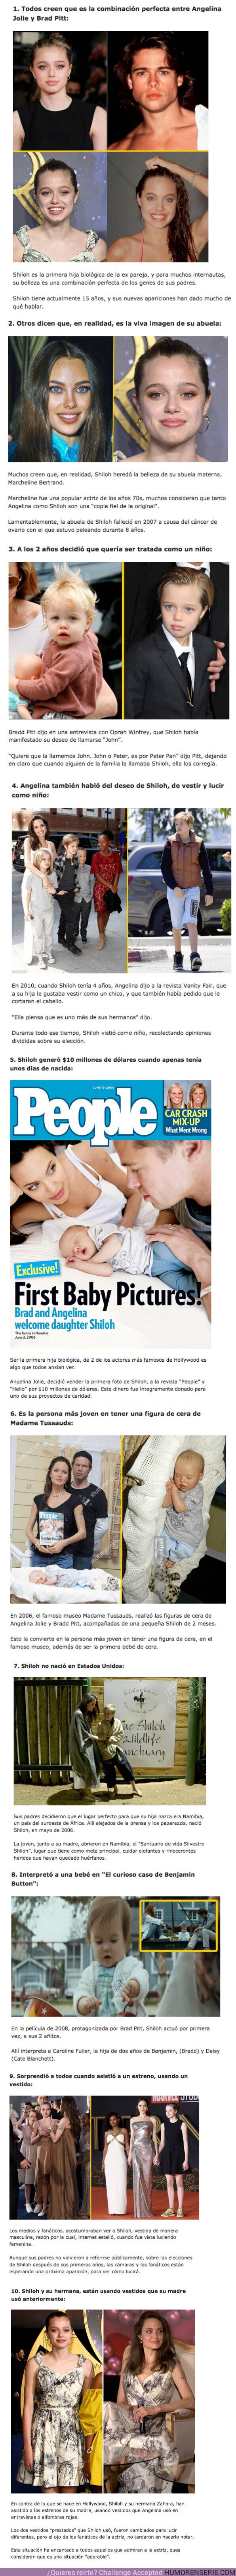 83991 - GALERÍA: 10 Curiosidades sobre ‘Shiloh’ la misteriosa hija de Brad Pitt y Angelina Jolie